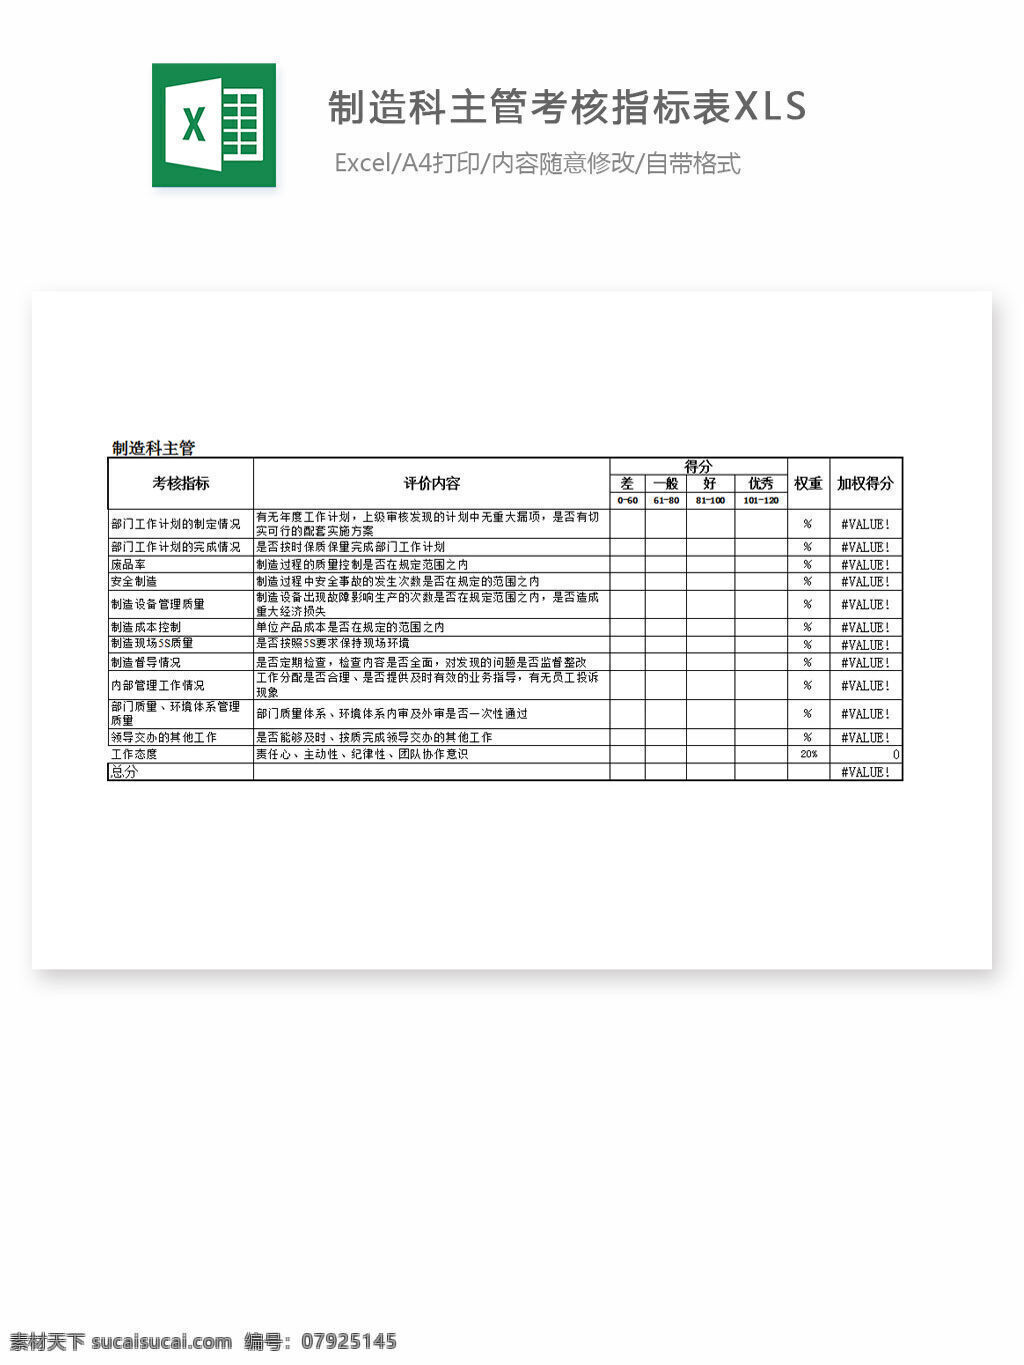 制造 科 主管 考核 指标 表 xls excel 表格 表格模板 表格设计 图表 考核指标表